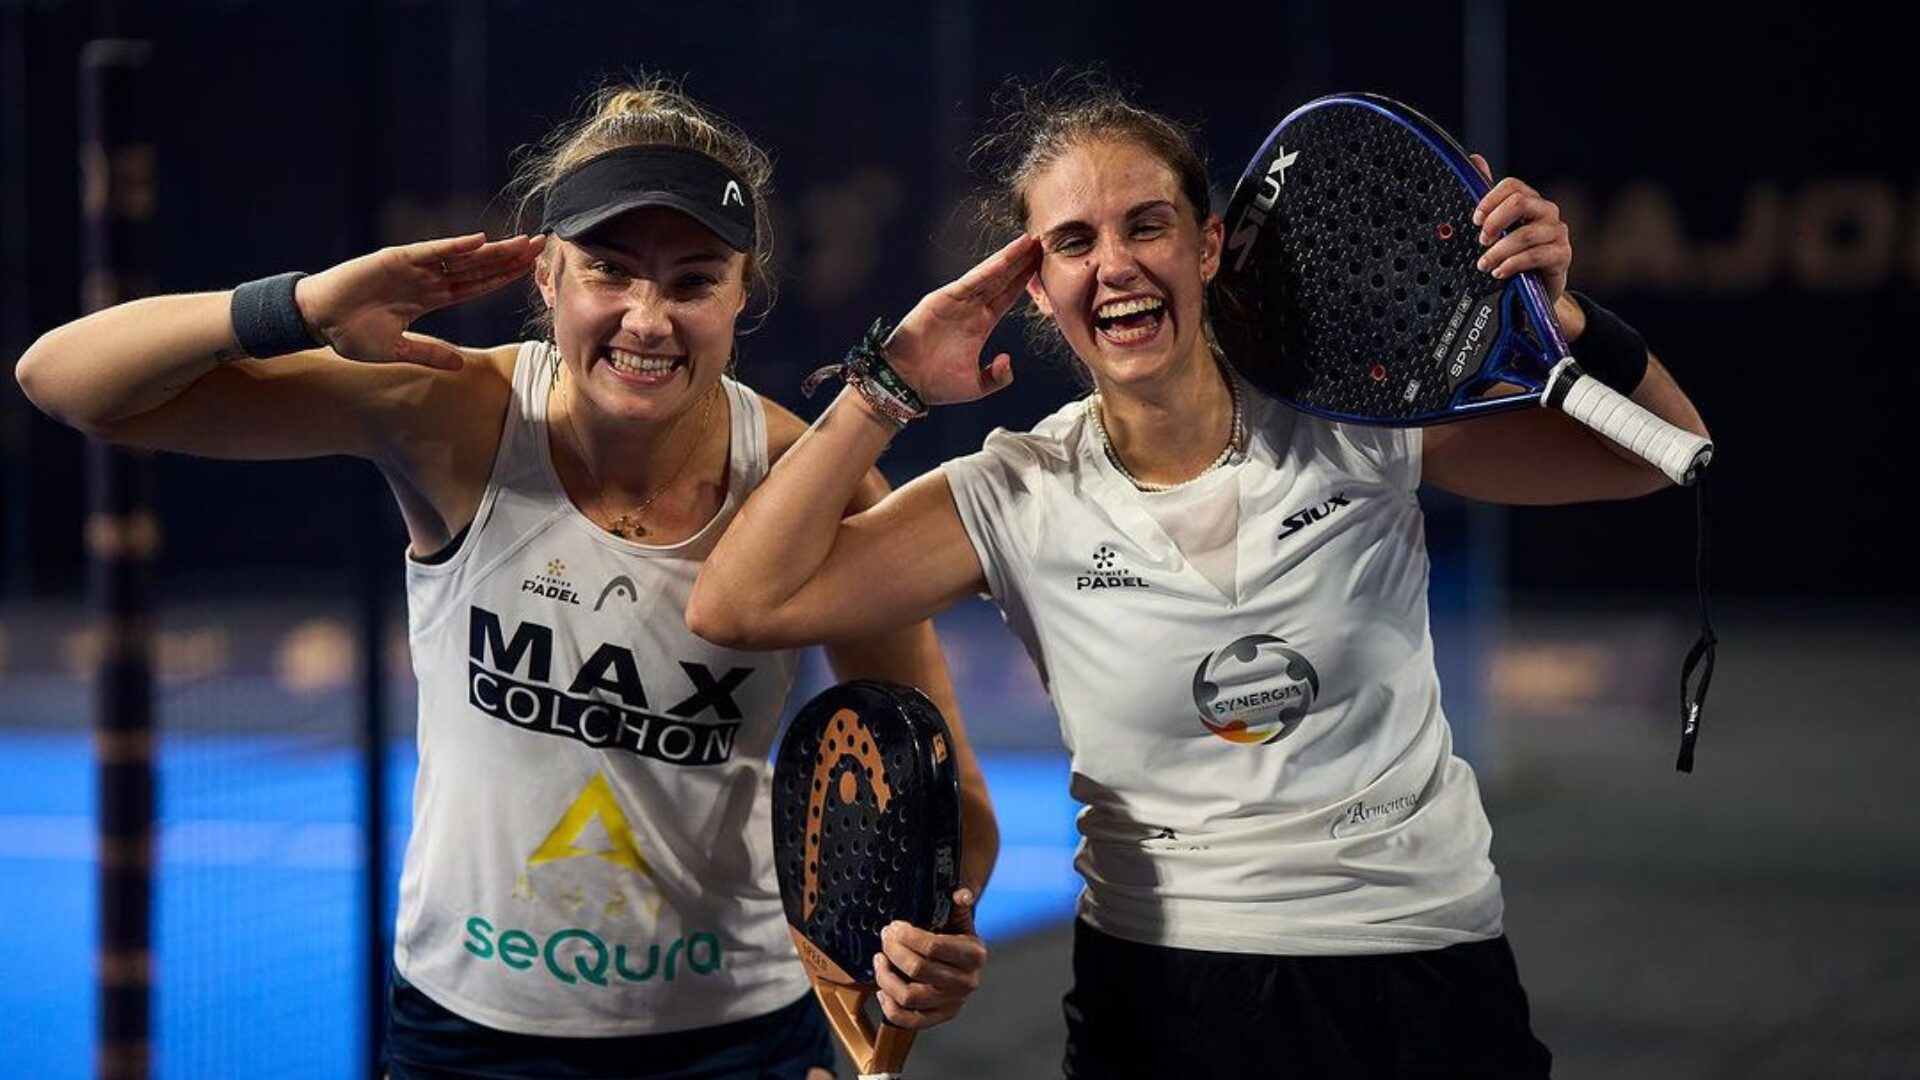 Qatar Major – Sharifova / Carnicero, överraskningsparet i kvartsfinalerna